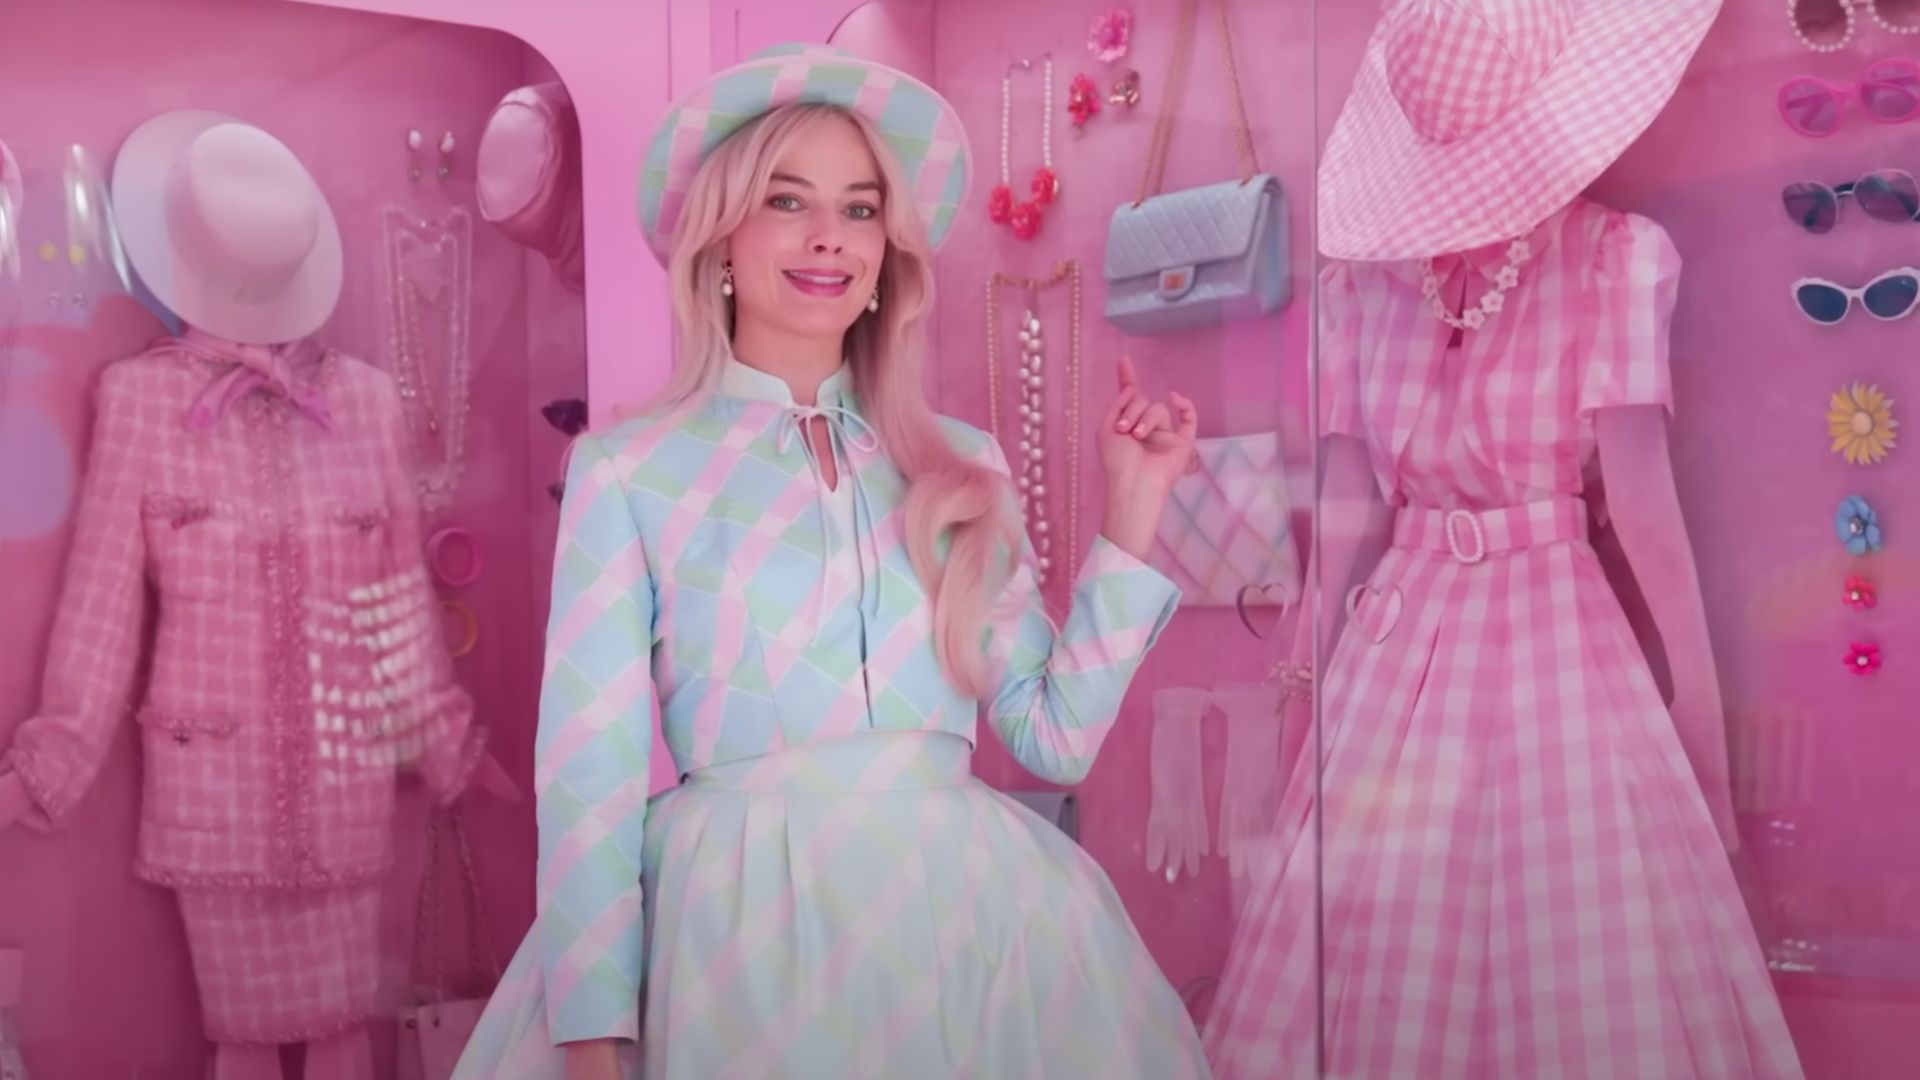 Margot Robbie stands in Barbie's pink Chanel wardrobe